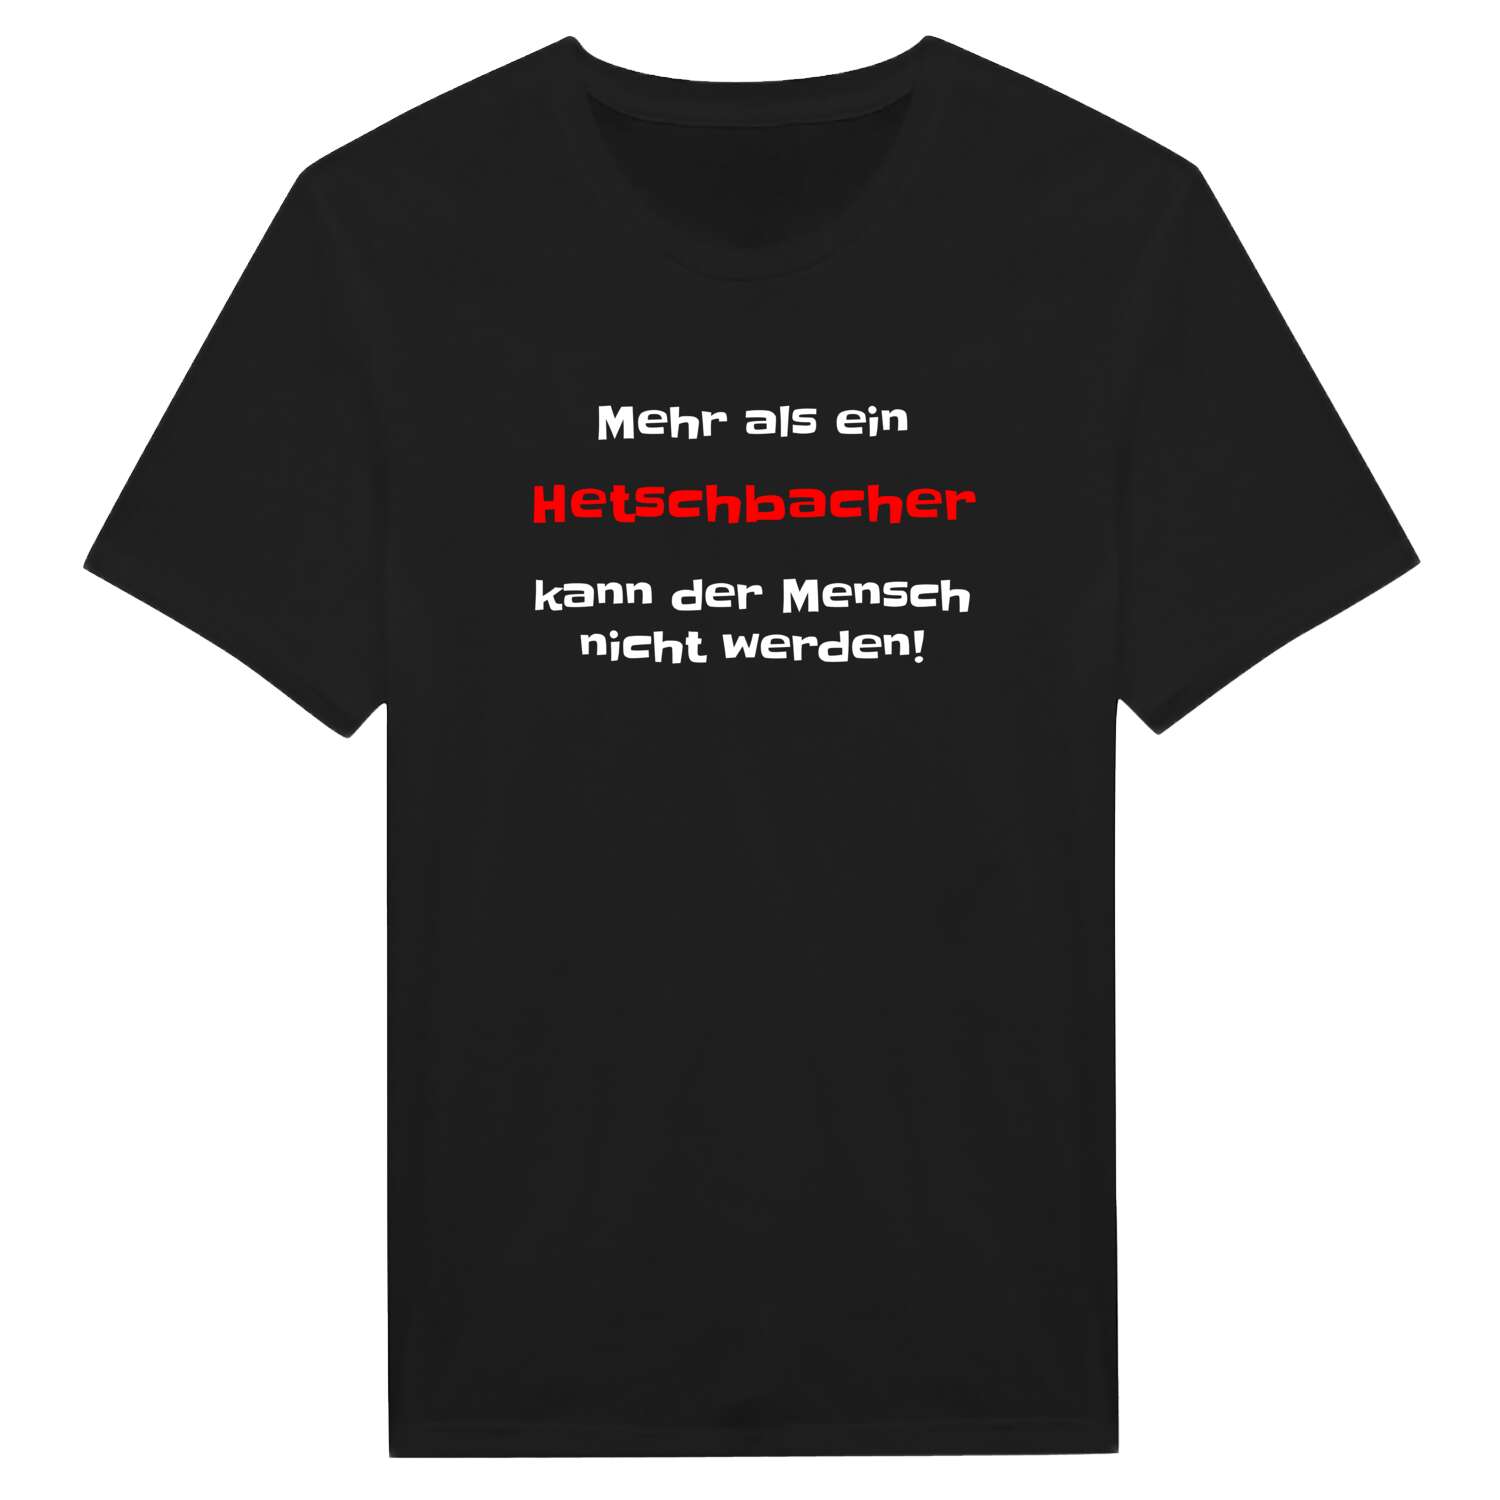 Hetschbach T-Shirt »Mehr als ein«